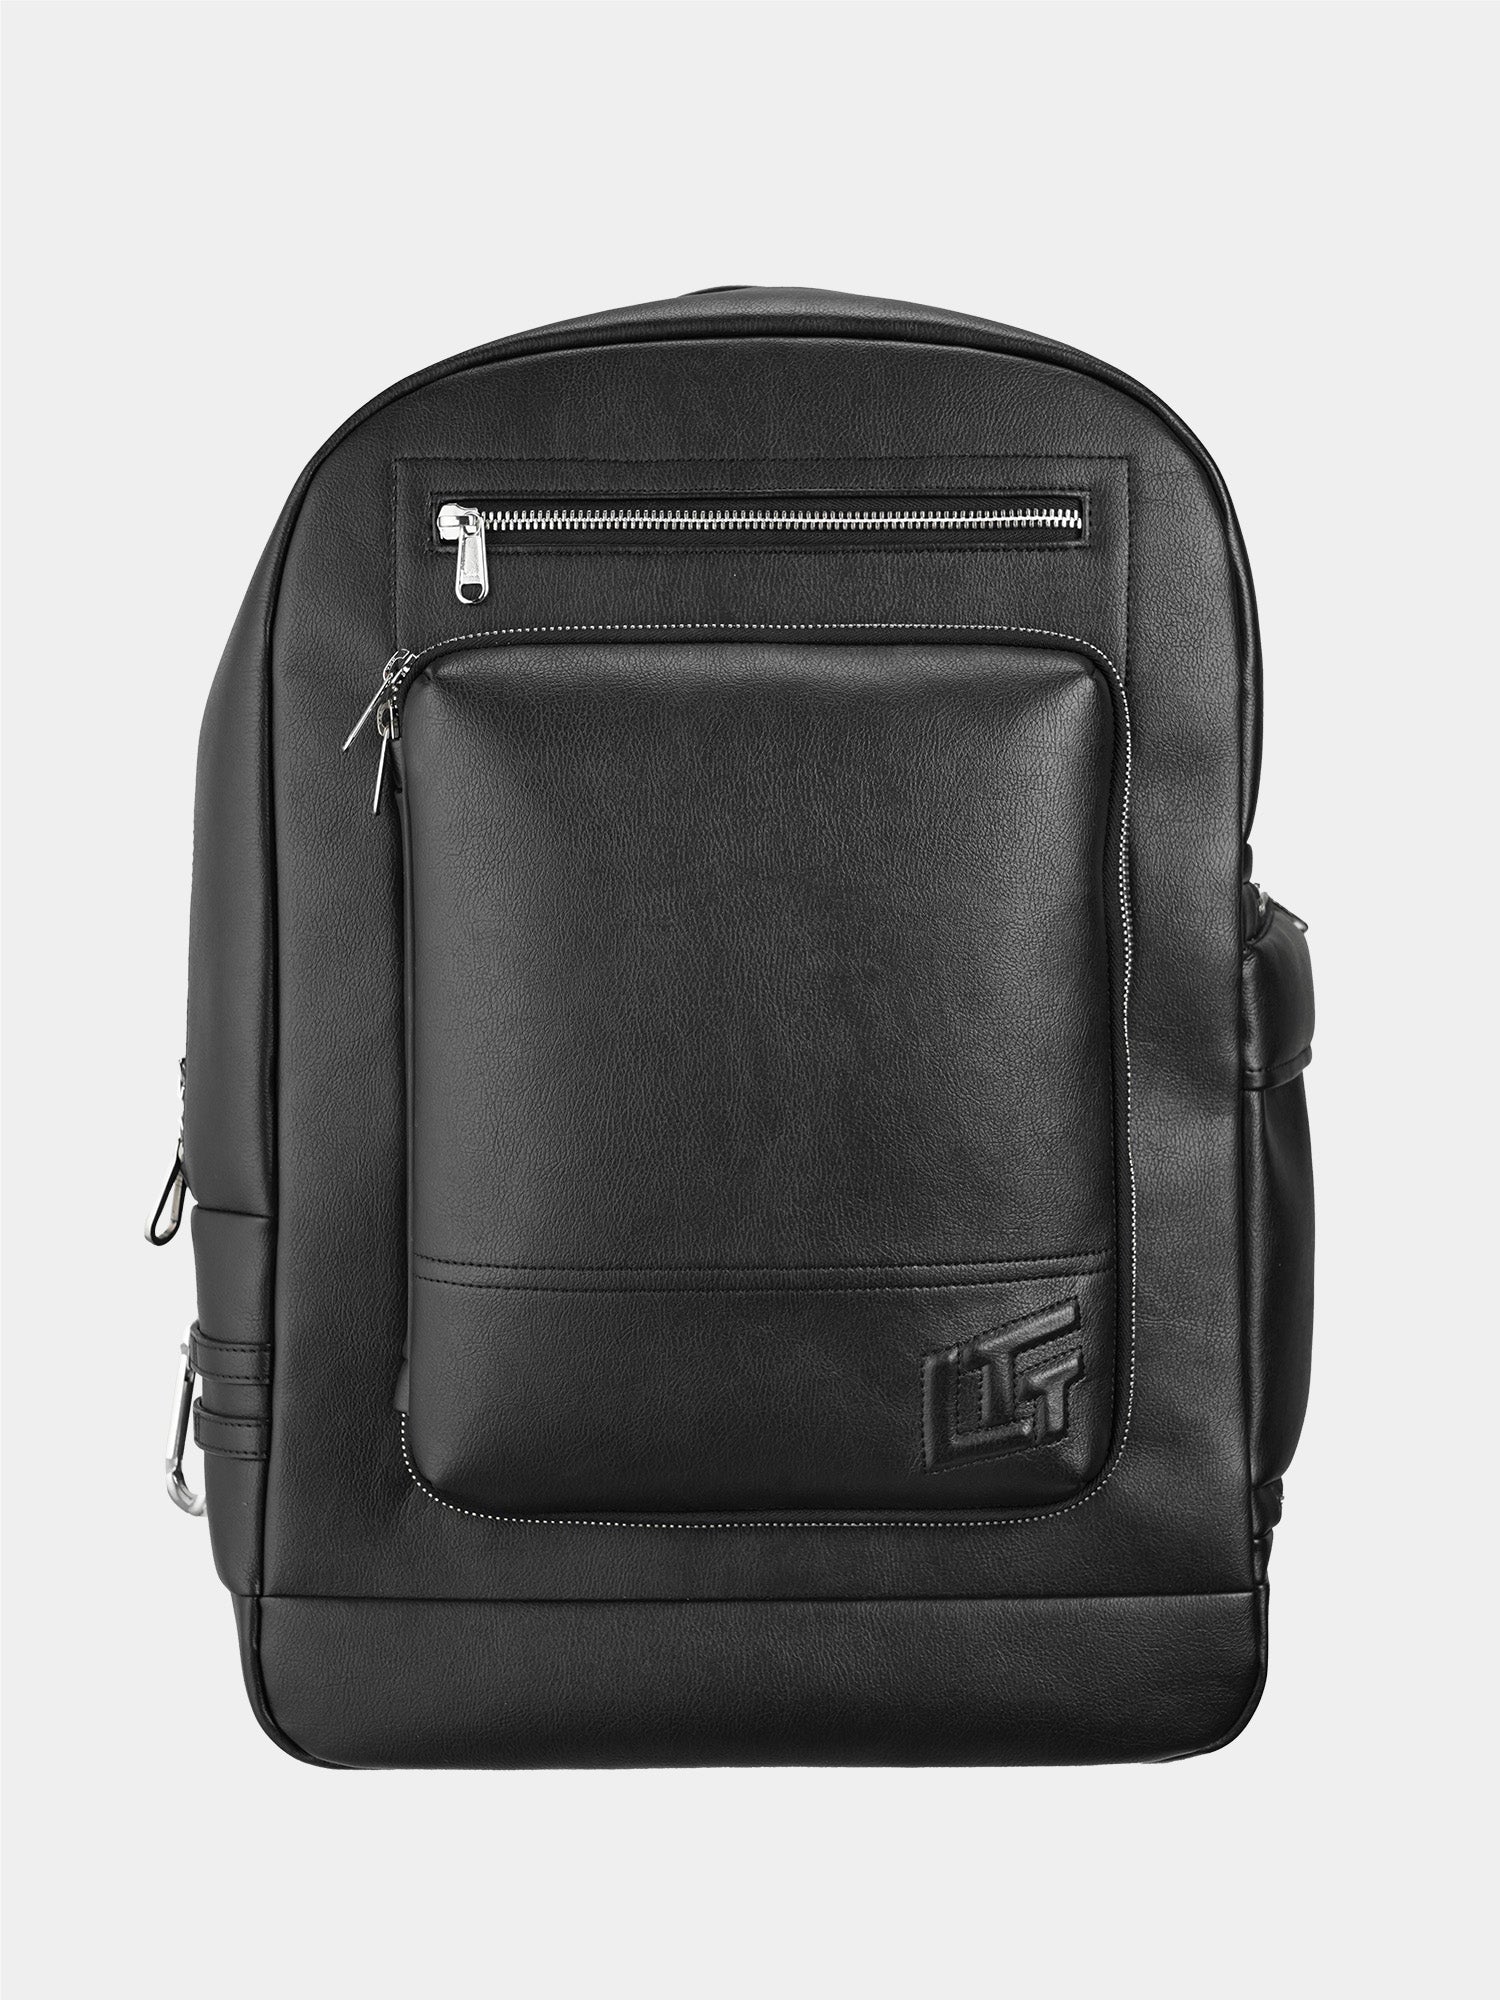 Australia Luxe Collective Mahogany Baldwin Leather Backpack